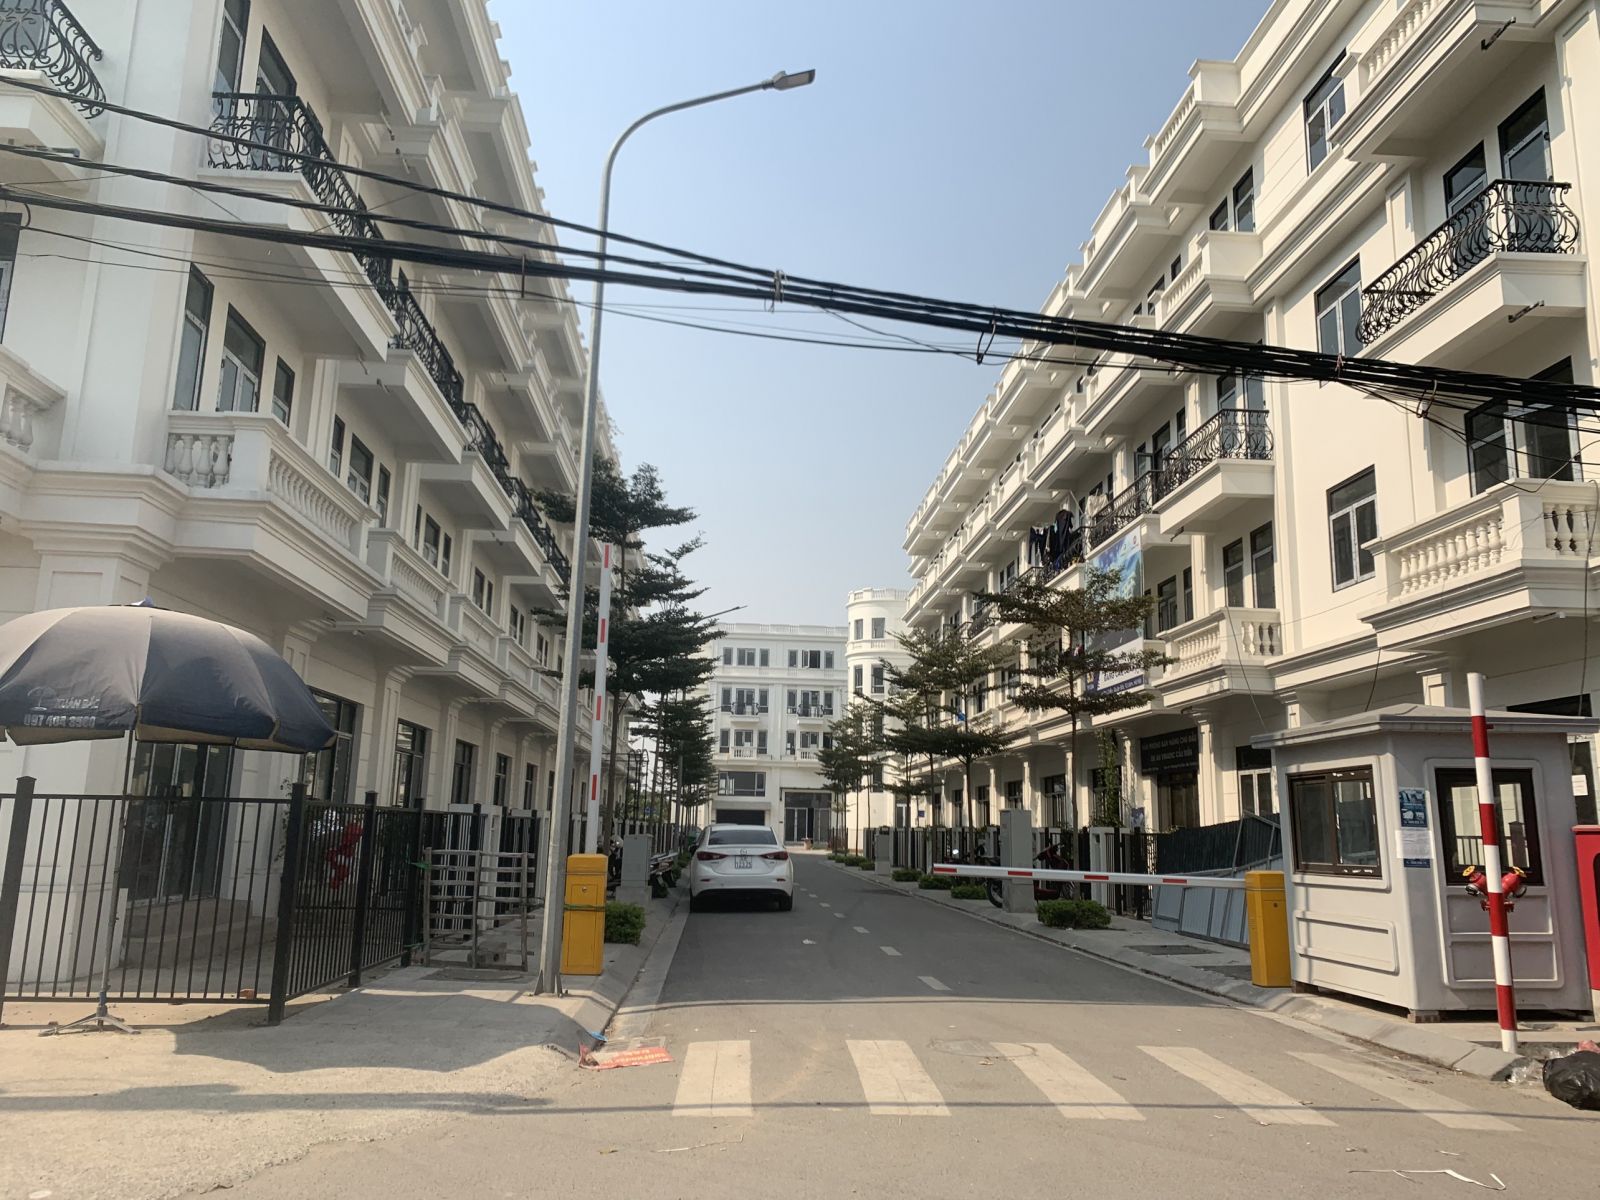 Dự án liền kề Phú Diễn (Phú Diễn Land) nằm trên mặt đường, phía gần cuối đường Phú Diễn do Công ty Cổ phần phát triển đầu tư xây dựng Việt Nam (Vinadic) làm Chủ đầu tư